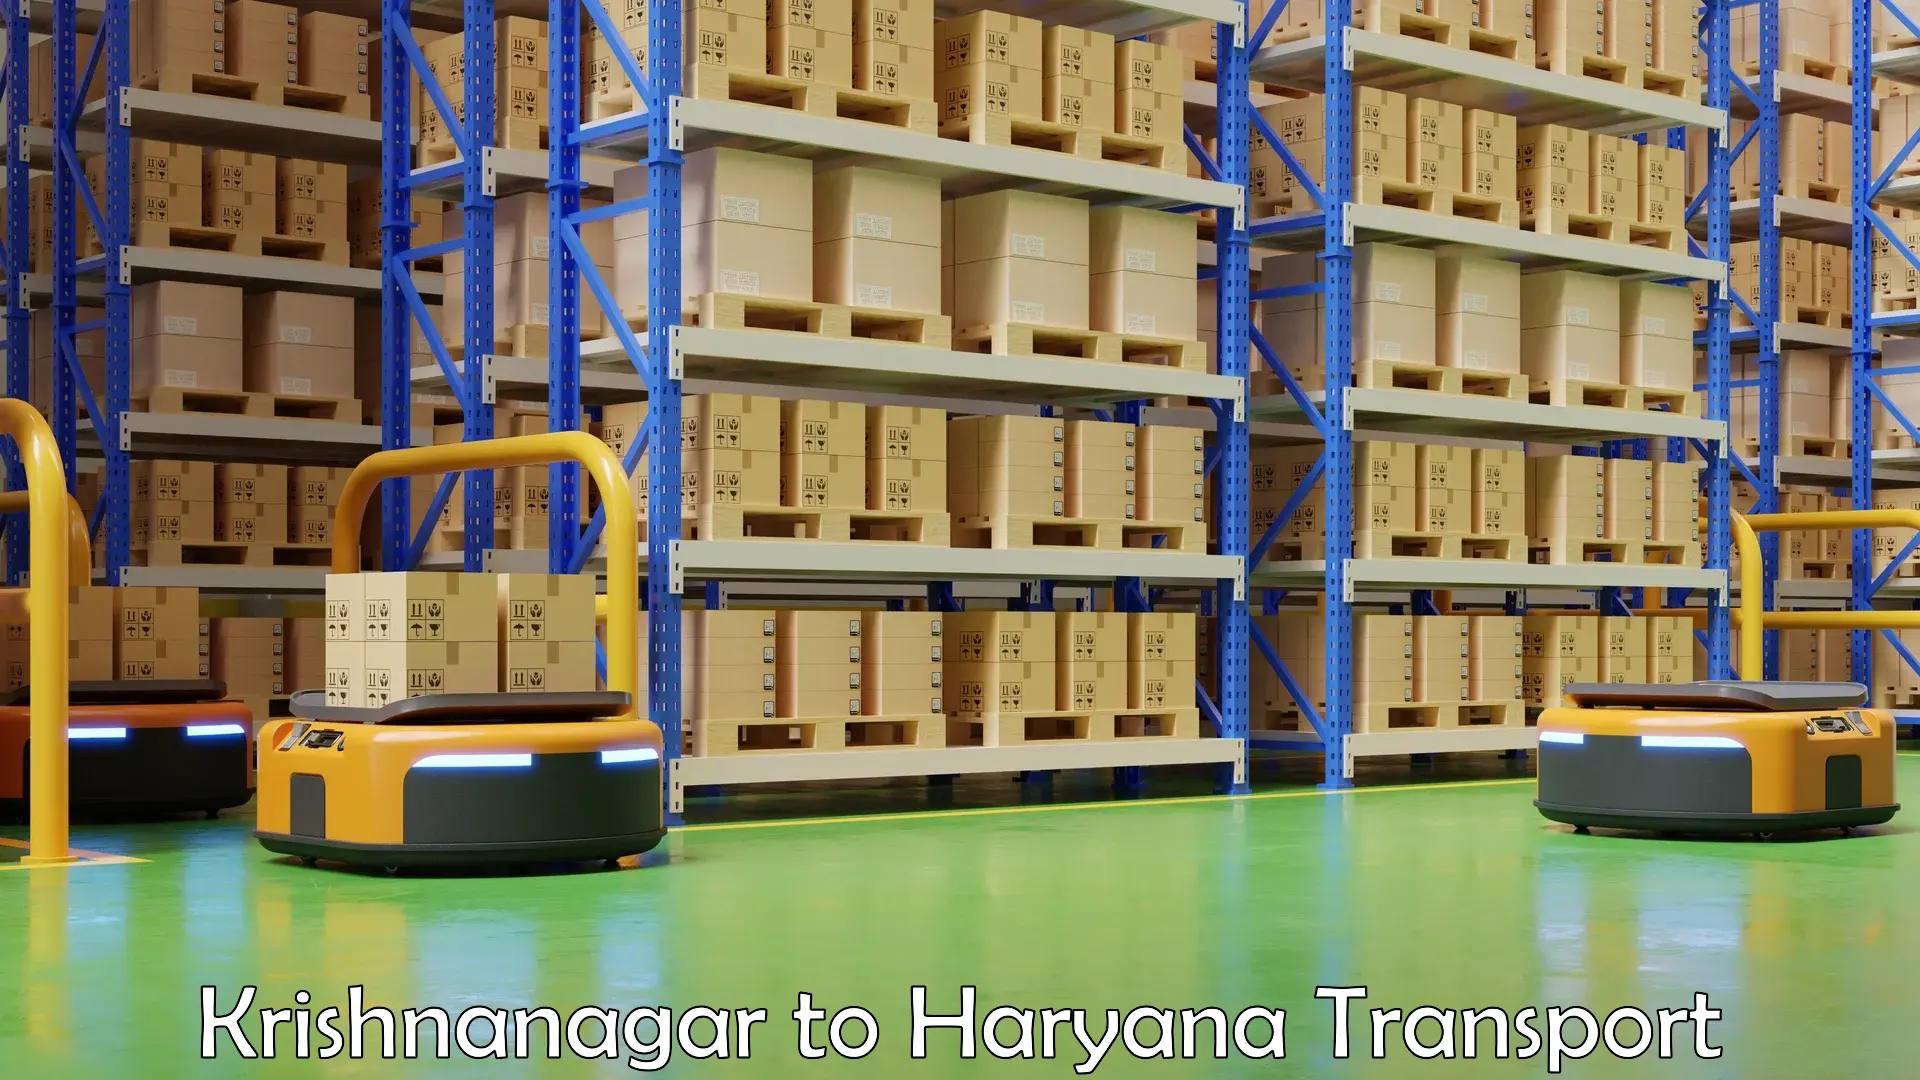 Shipping partner Krishnanagar to Hansi